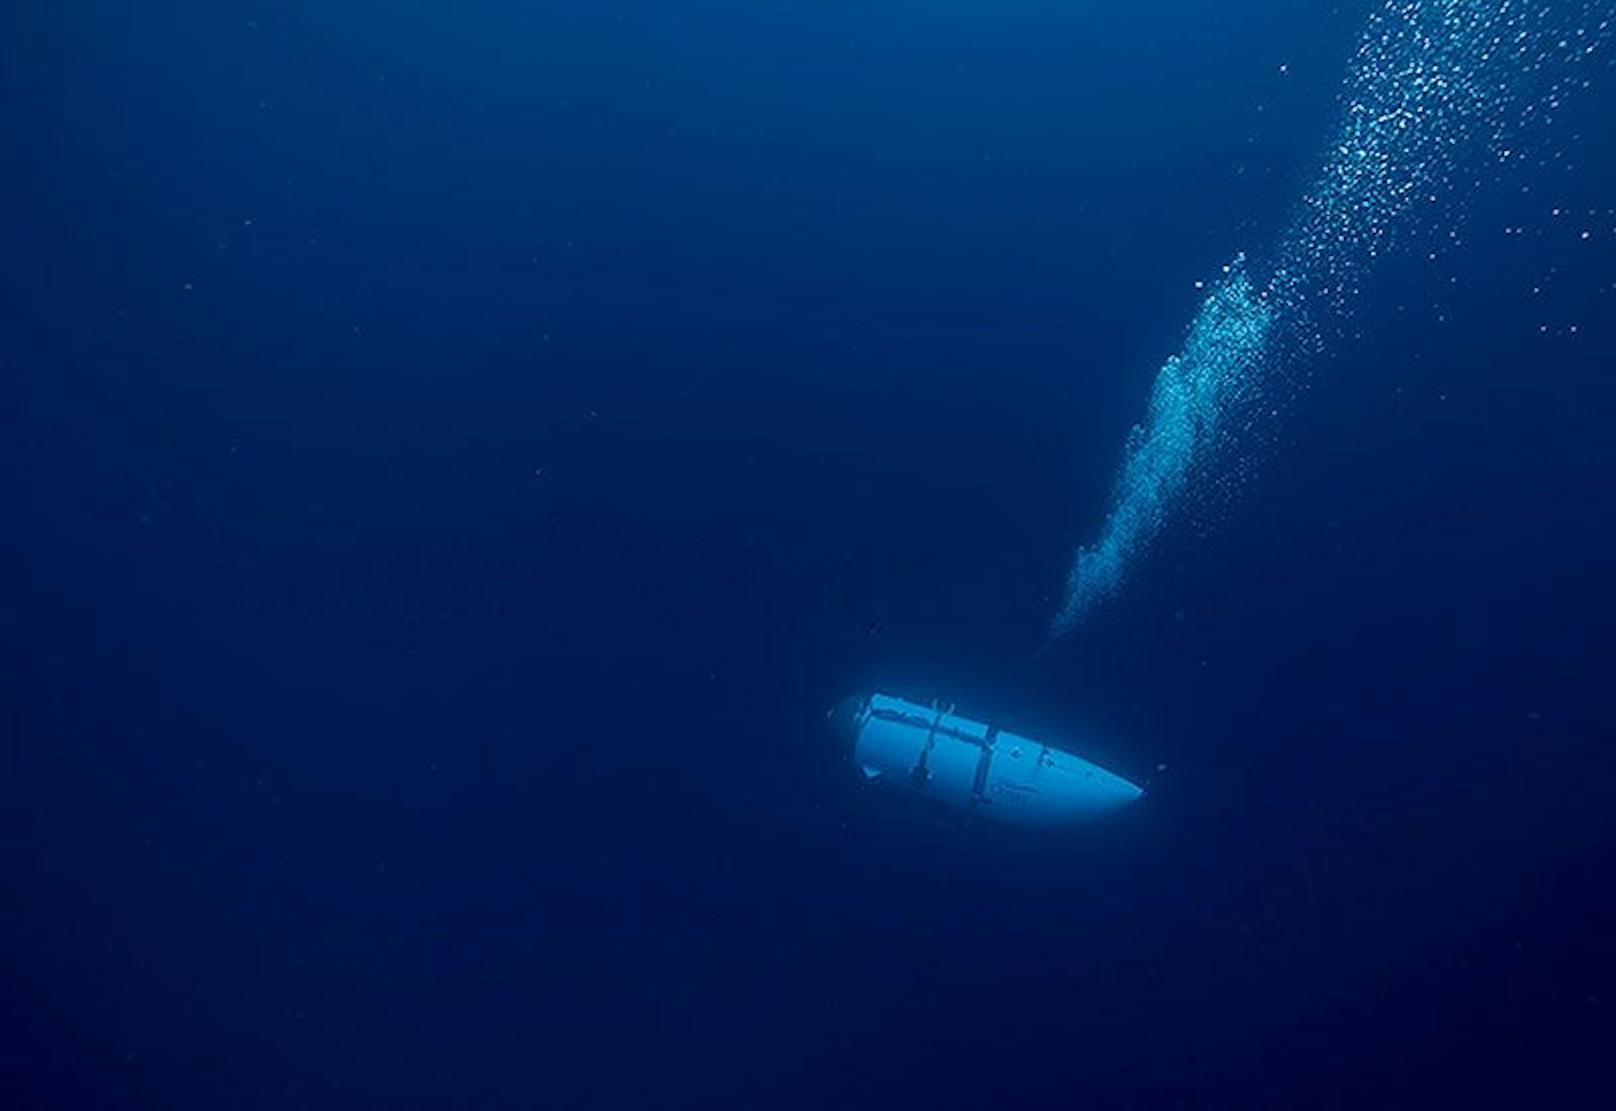 Die lebenserhaltenden Systeme des "Titan"-U-Boots sollen den fünf Insassen bis zu 96 Stunden lang Sauerstoff liefern können.